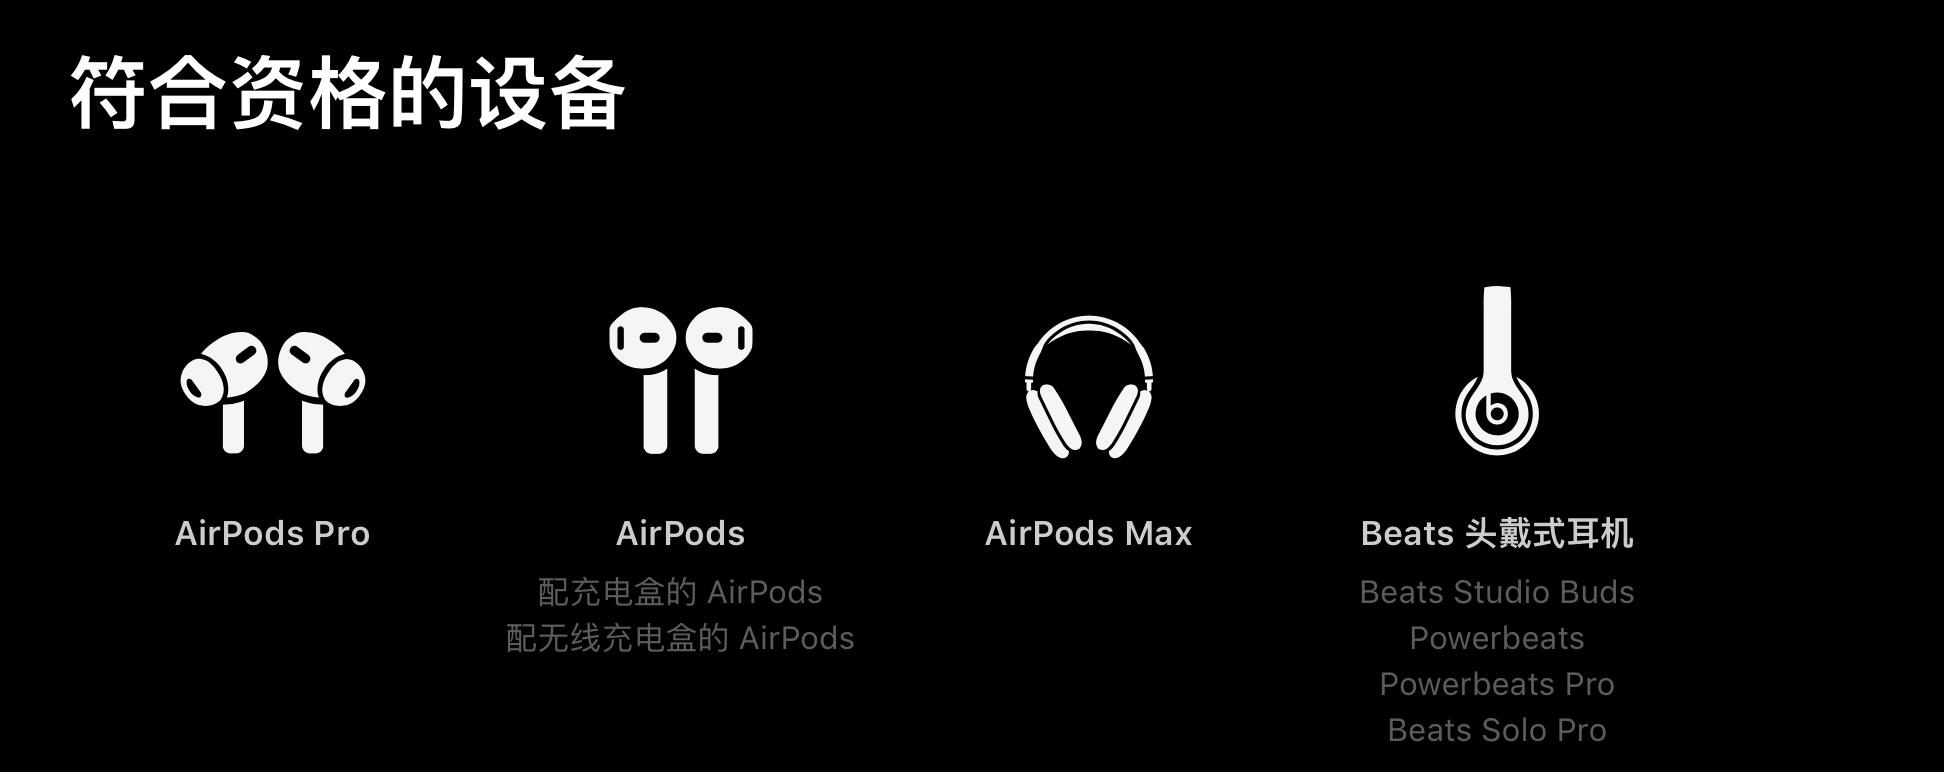 苹果AirPods、Beats系列耳机用户可免费获取6个月Apple Music试用-我爱音频网